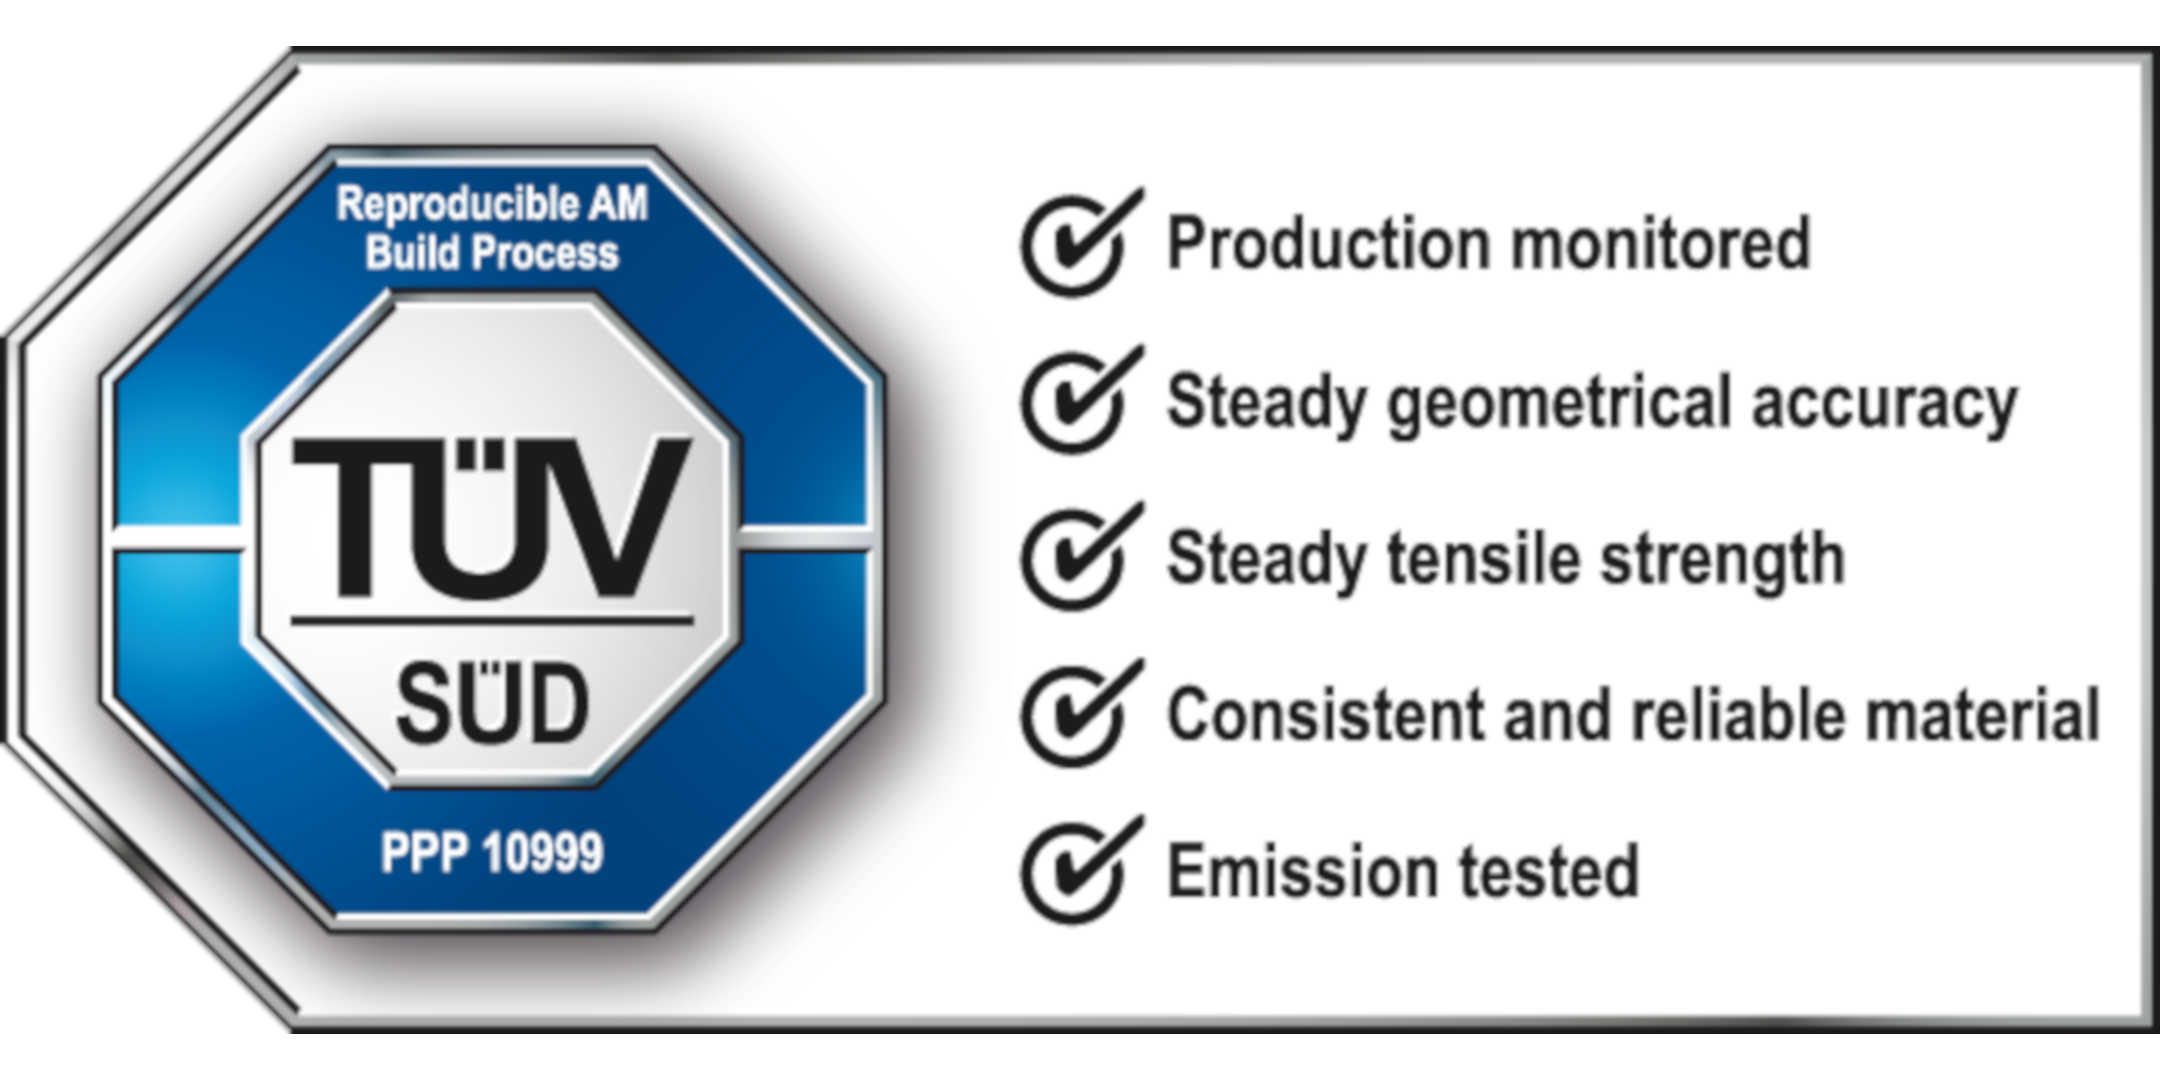 The TÜV SÜD certification mark